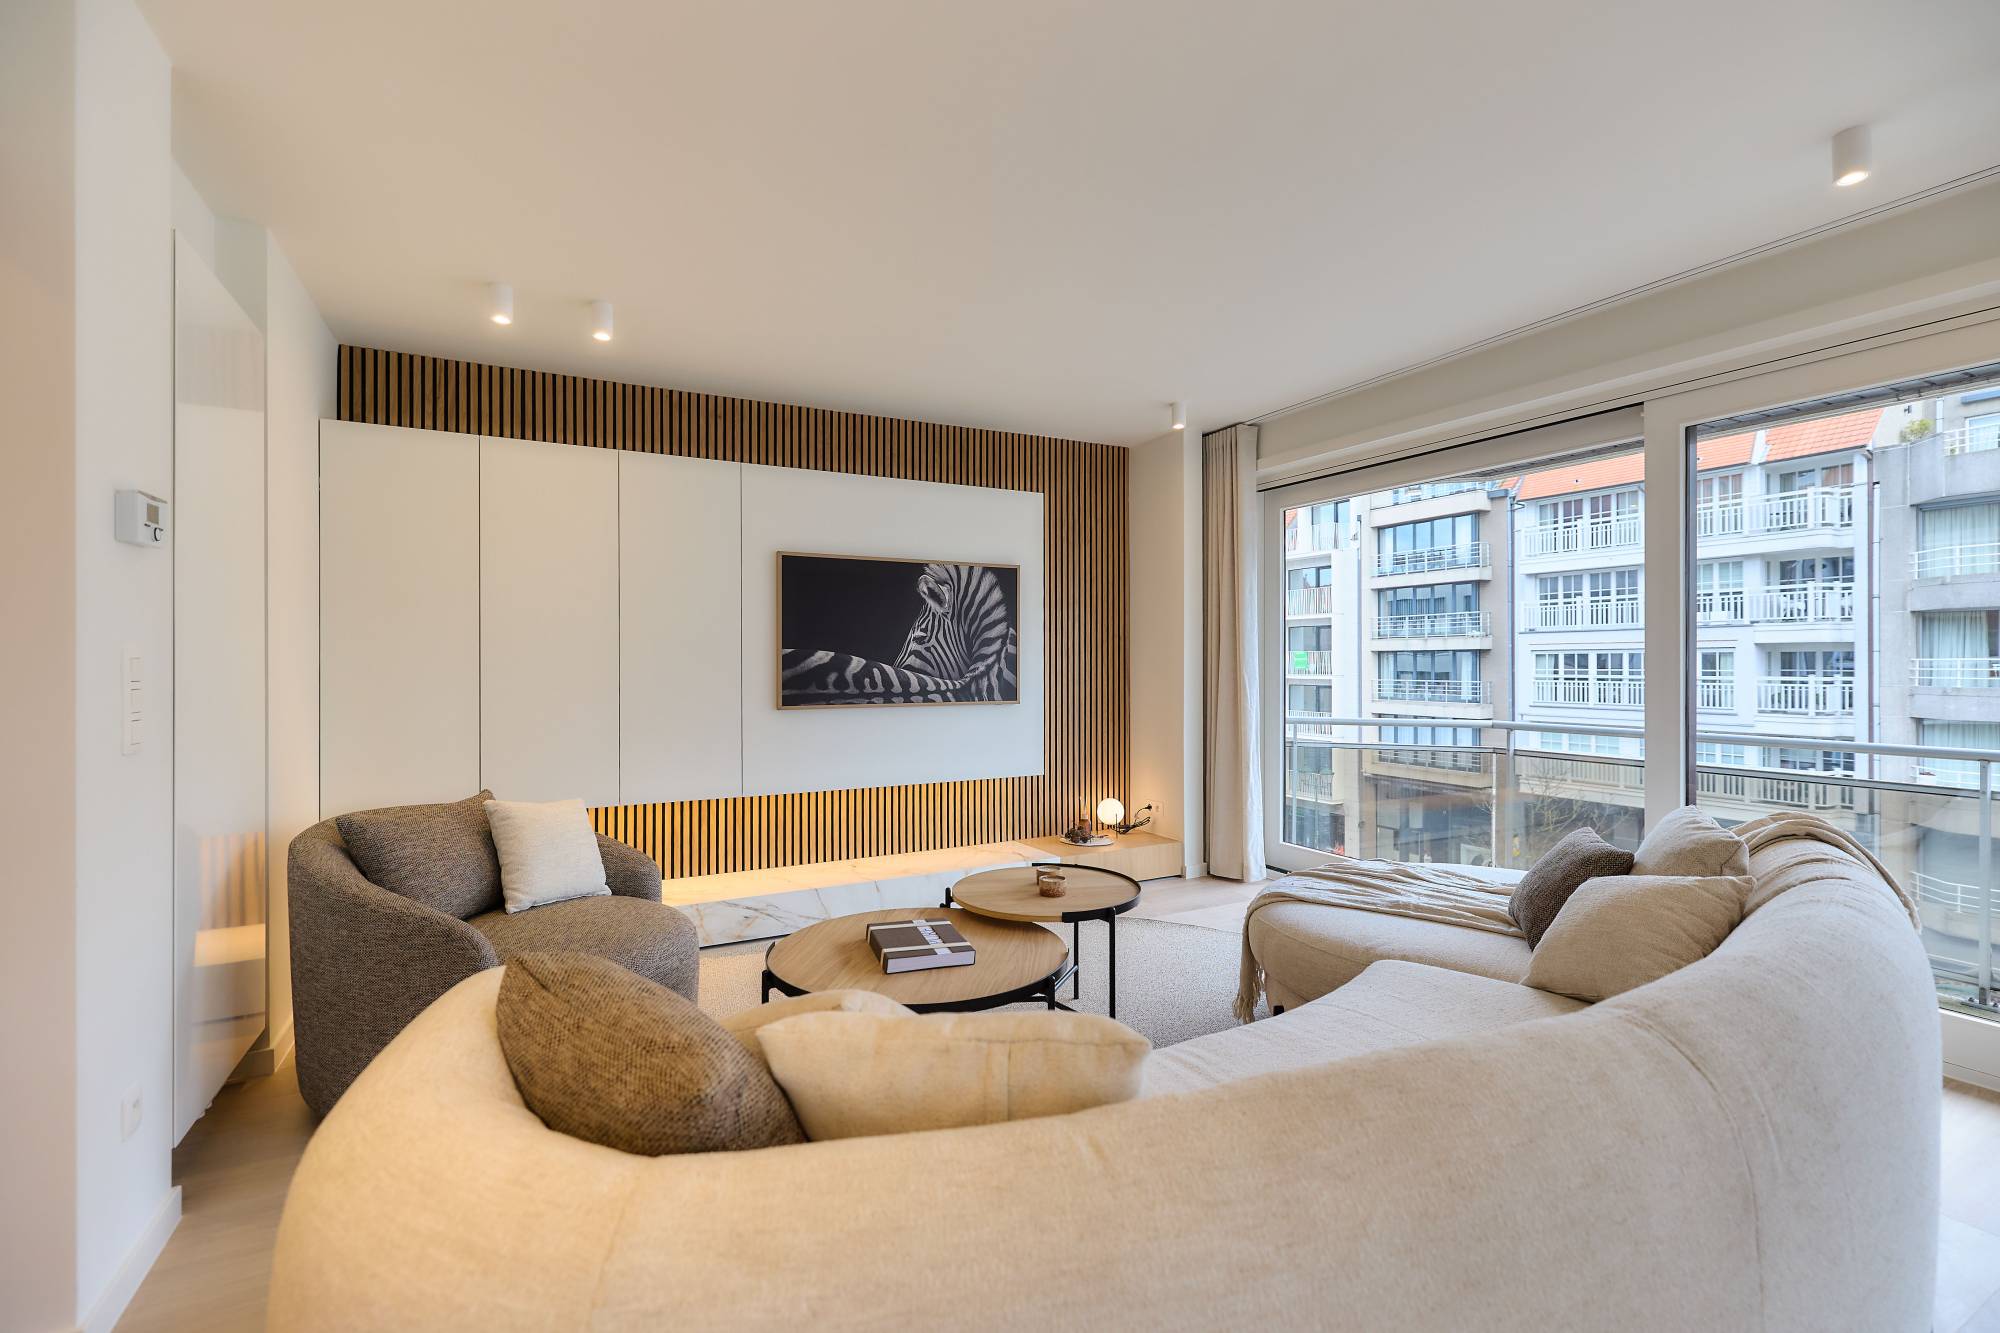 VERKOOP Appartement 3 SLPK Knokke-Heist - Lippenslaan / totaalrenovatie / meubilair inclusief!